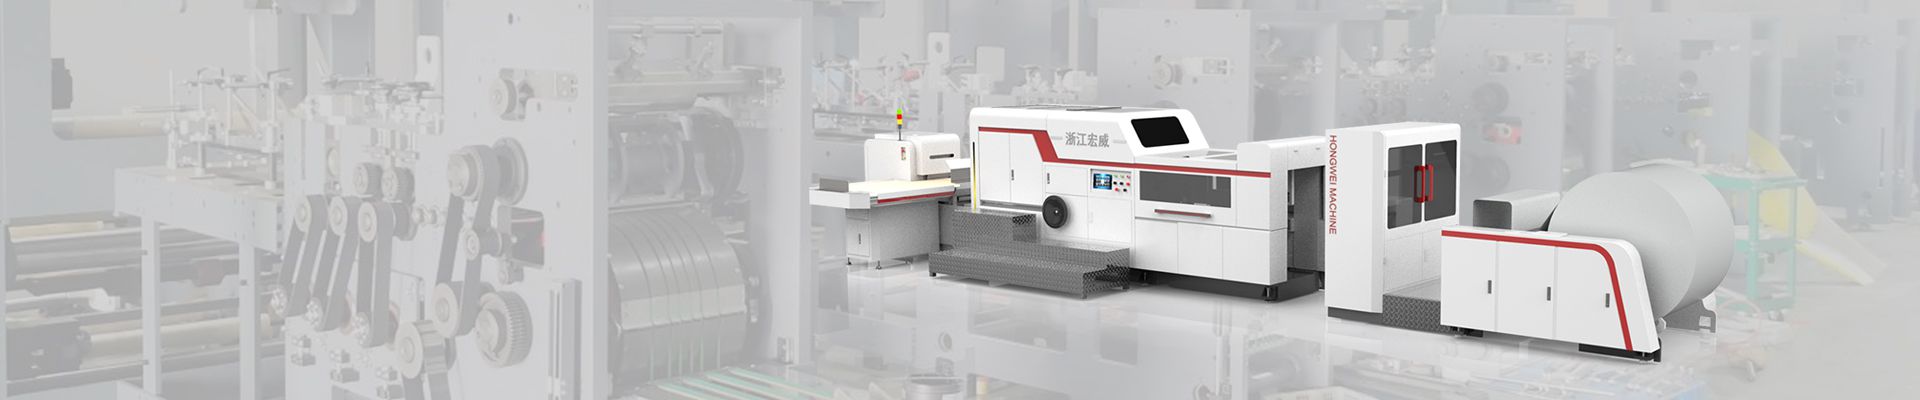 Zhejiang Hongwei Machinery Co., Ltd.